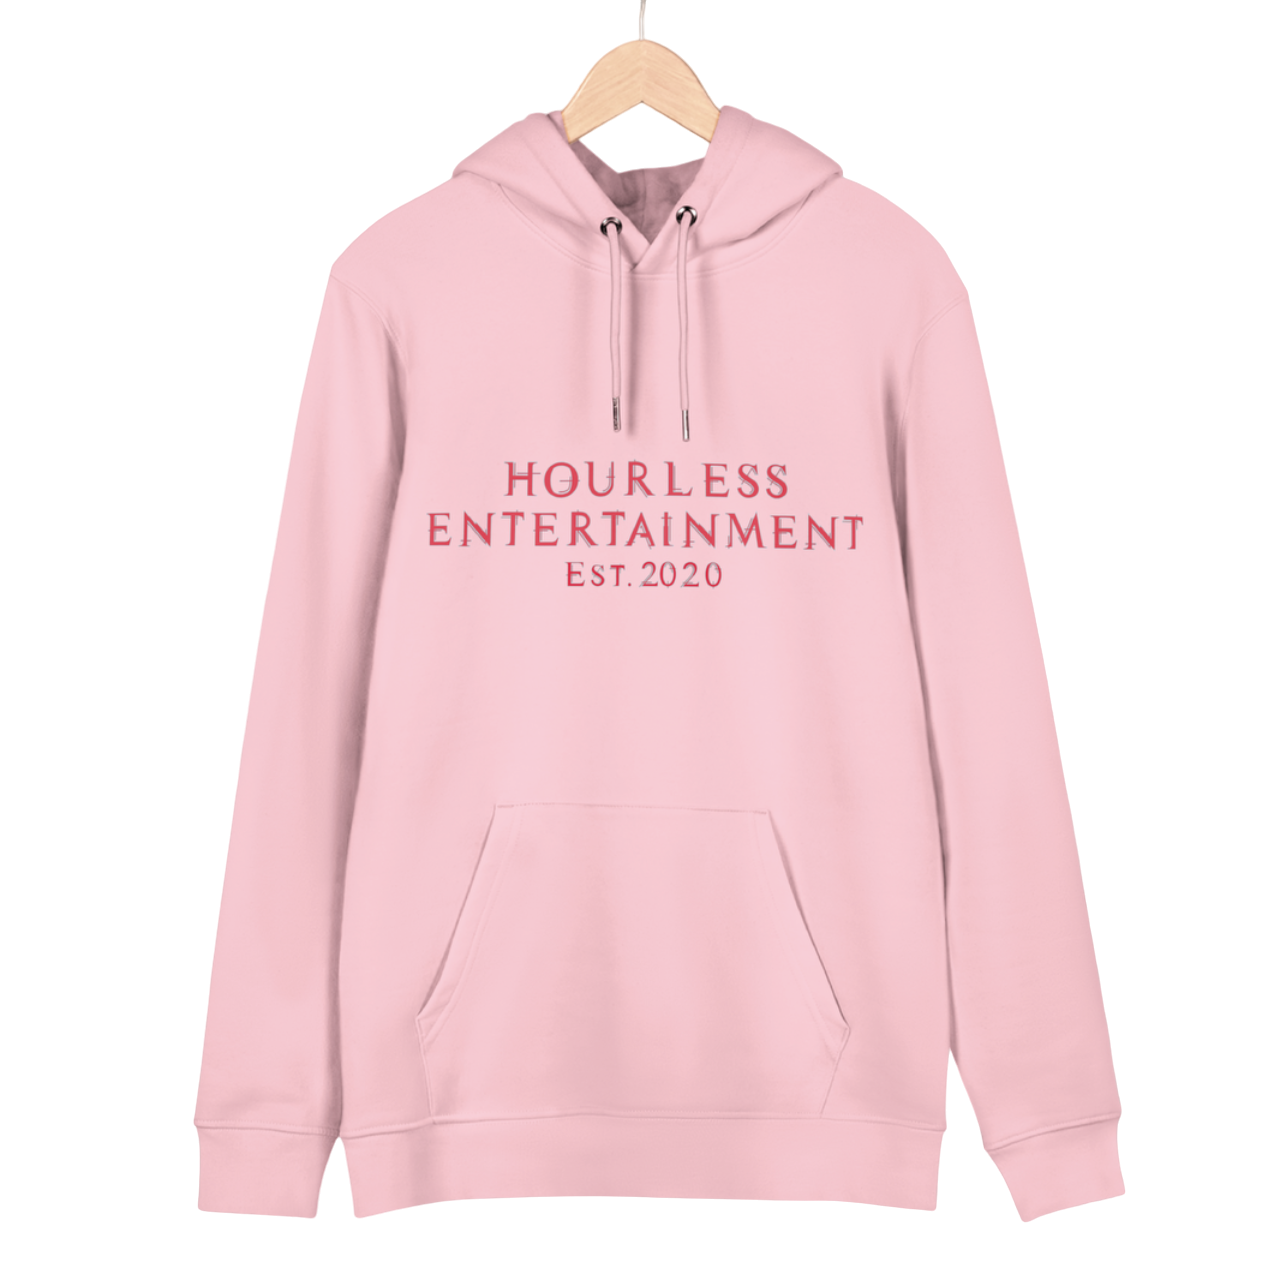 HOURLESS ENT. - Sweatshirt